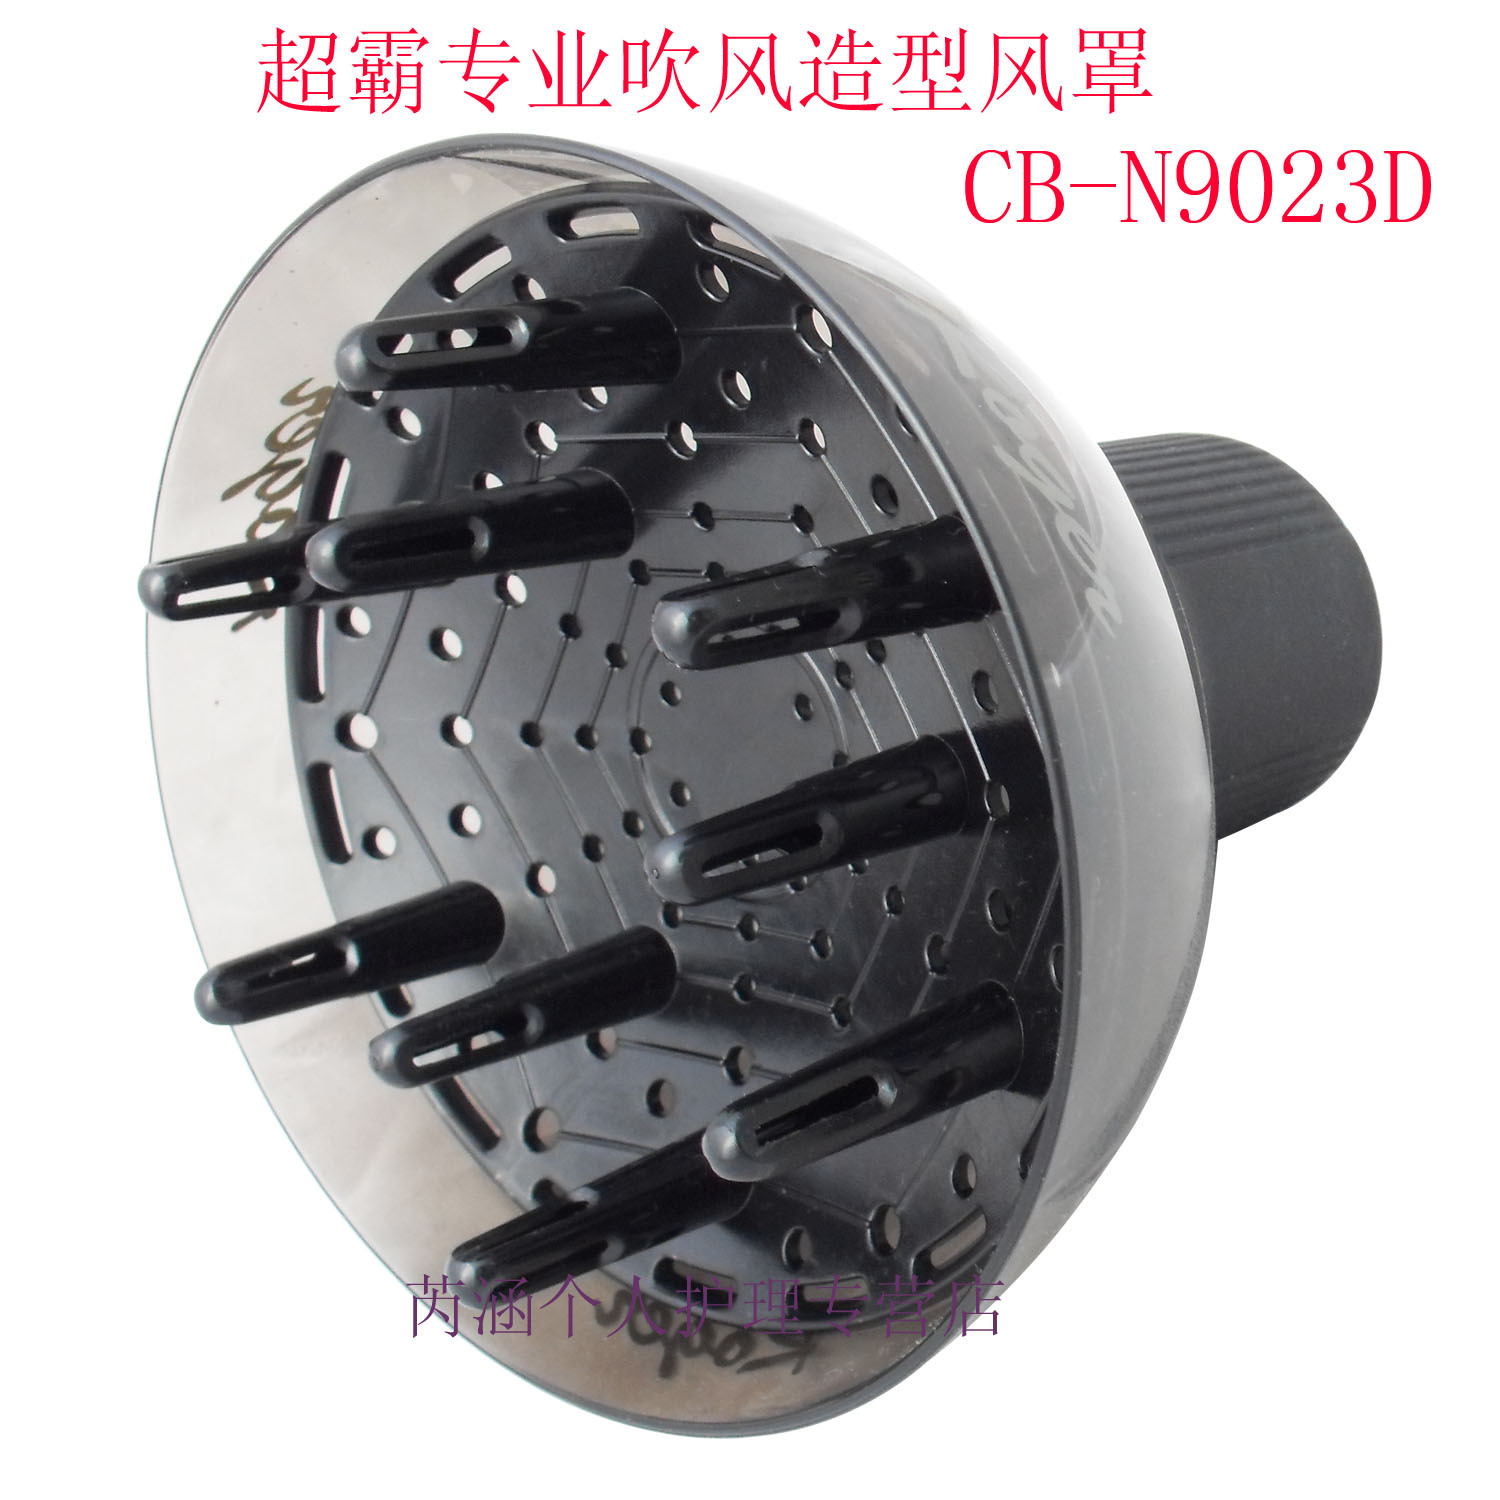 包邮 超霸风罩CB-N9023D 透明美发烘发筒 造型烘罩器 万能风罩